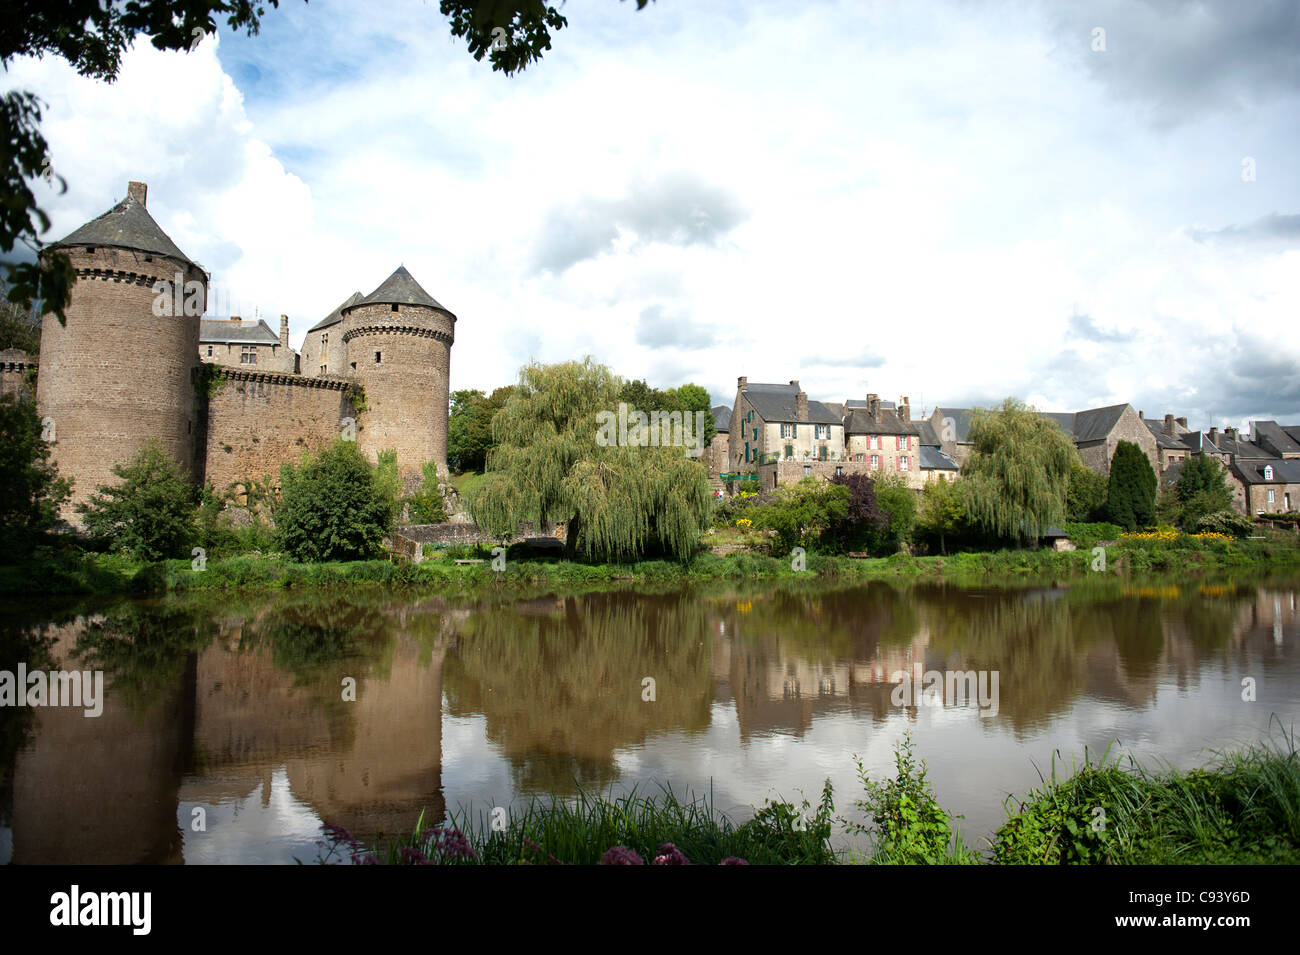 15th century castle of Lassay-les-Châteaux, a petite cité de caractère en Mayenne in Pays de la Loire, France Stock Photo